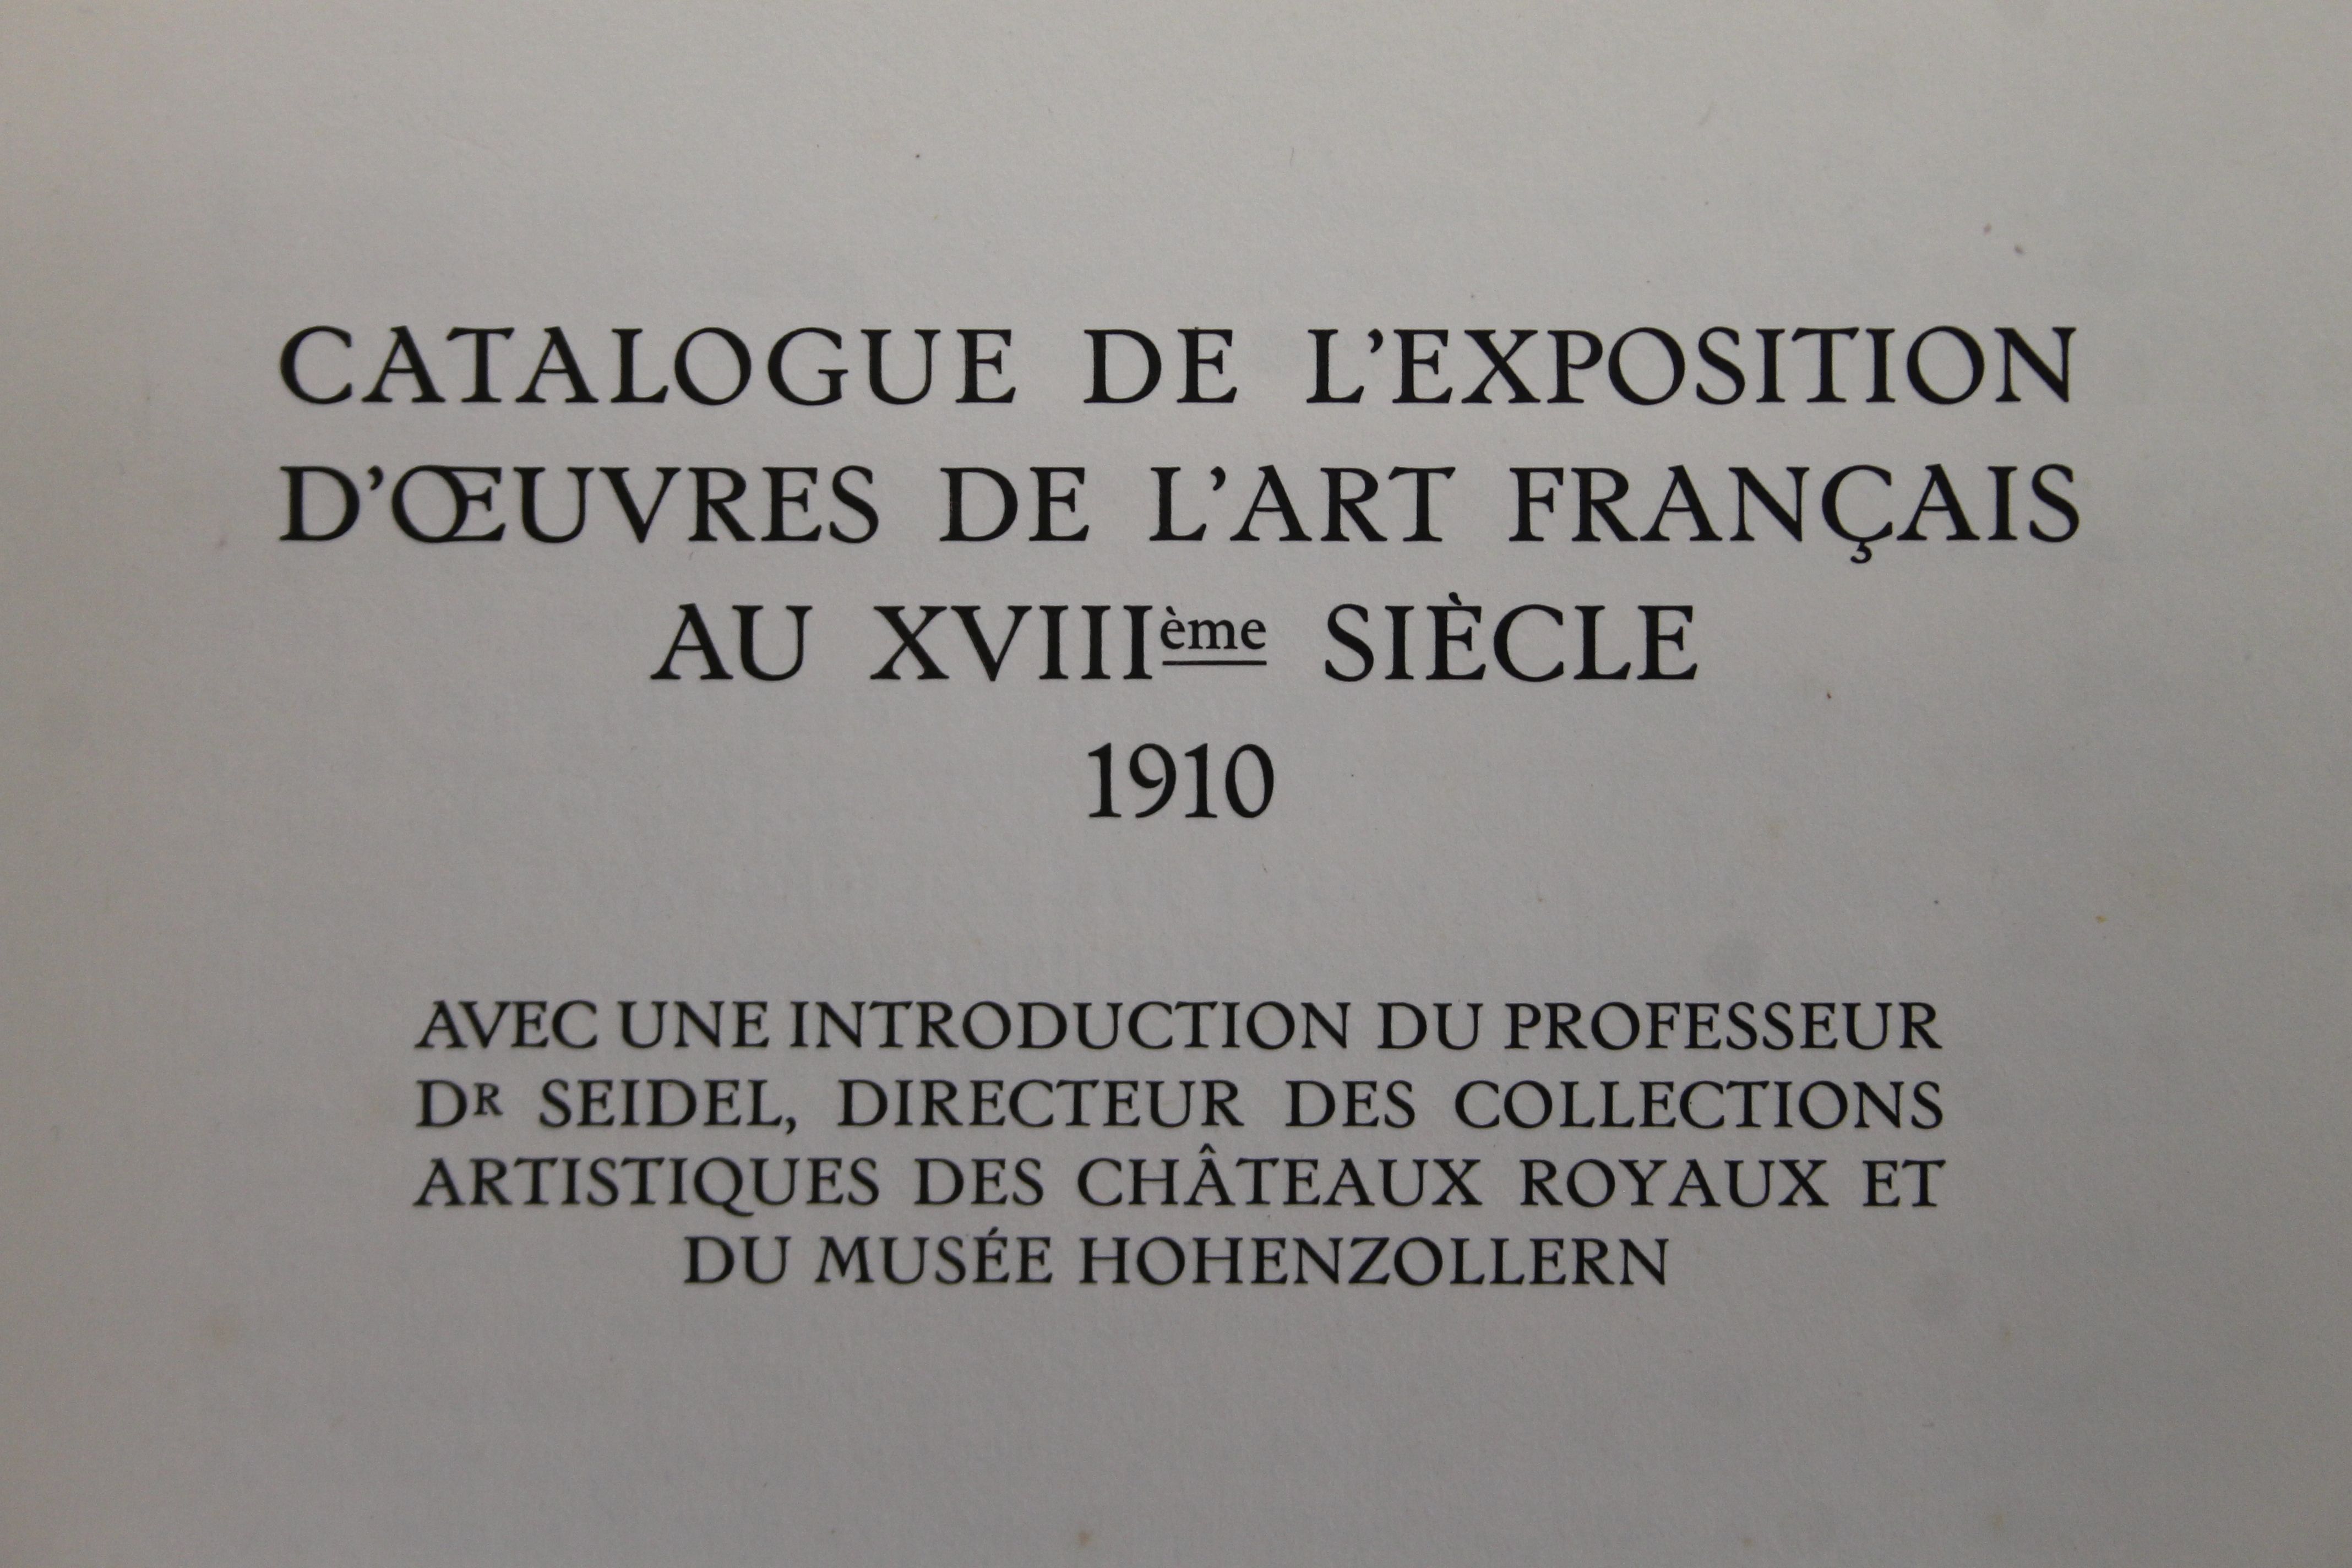 Exposition d'Oeuvres de l'Art Francais au XVIIIeme siecle, folio, - Image 7 of 30